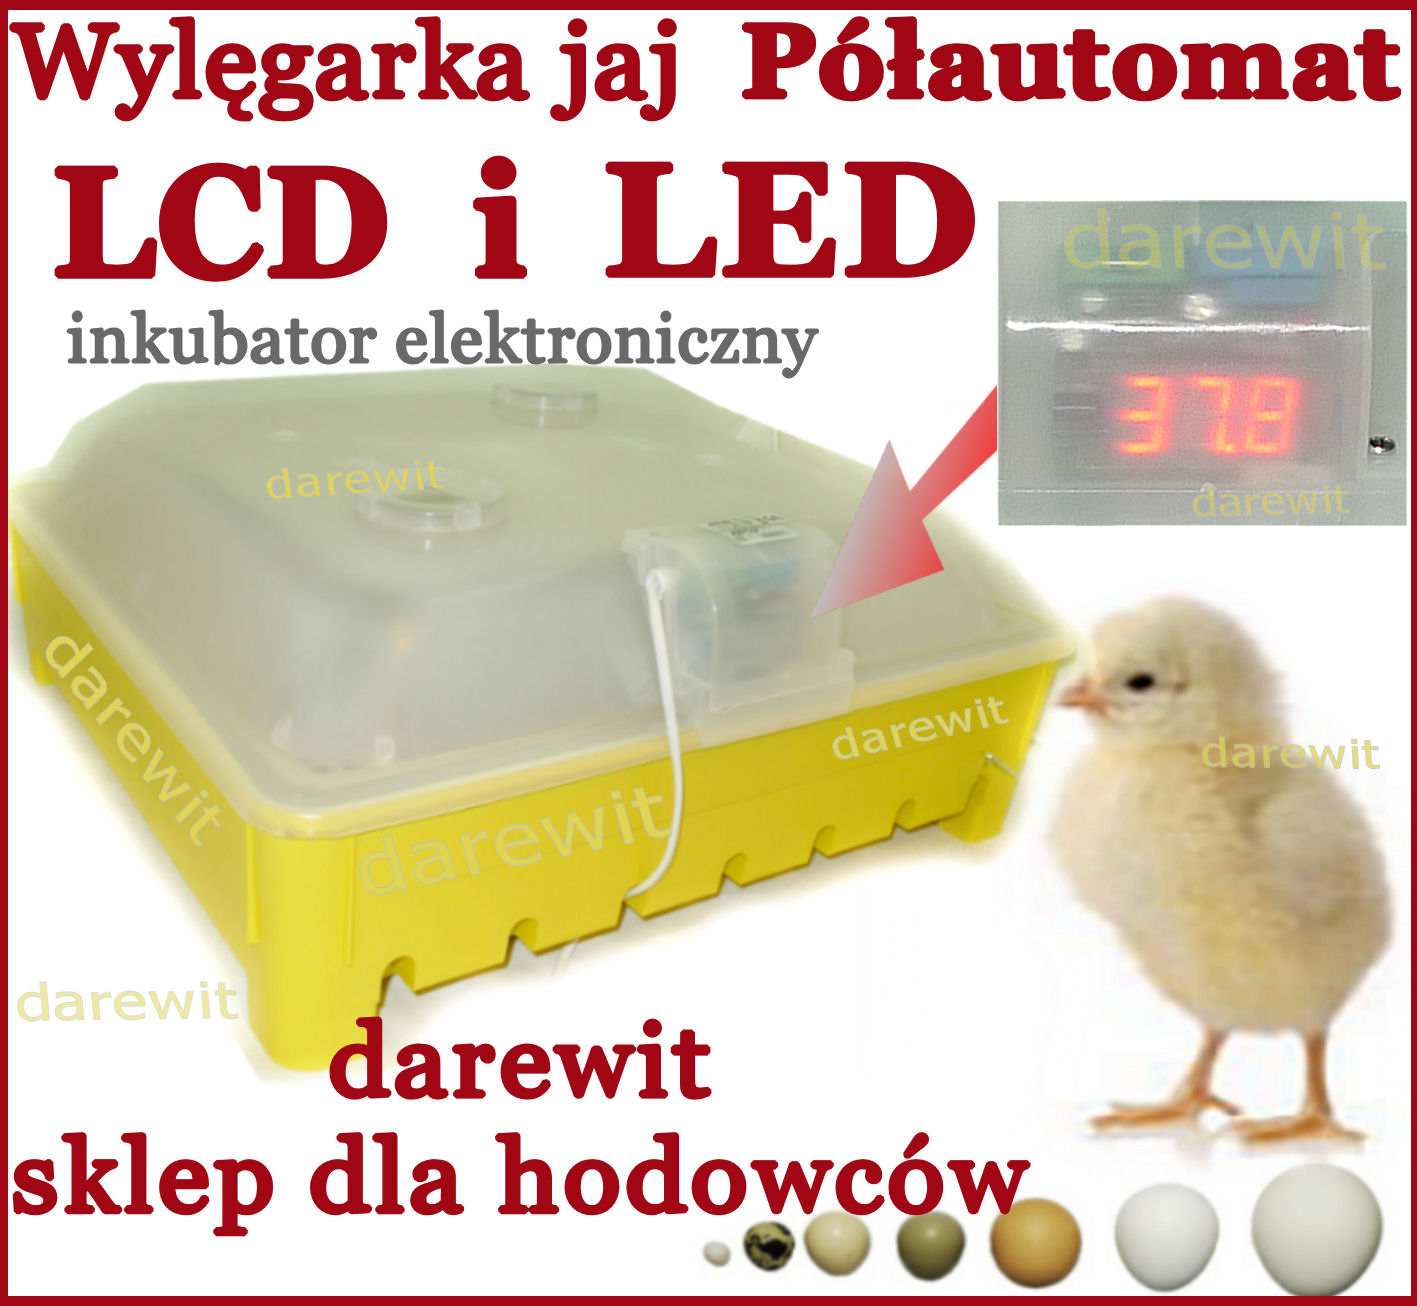 Wylęgarka jaj RO-22P PILOT, inkubator Pół-automat z tacą na 56 jaj